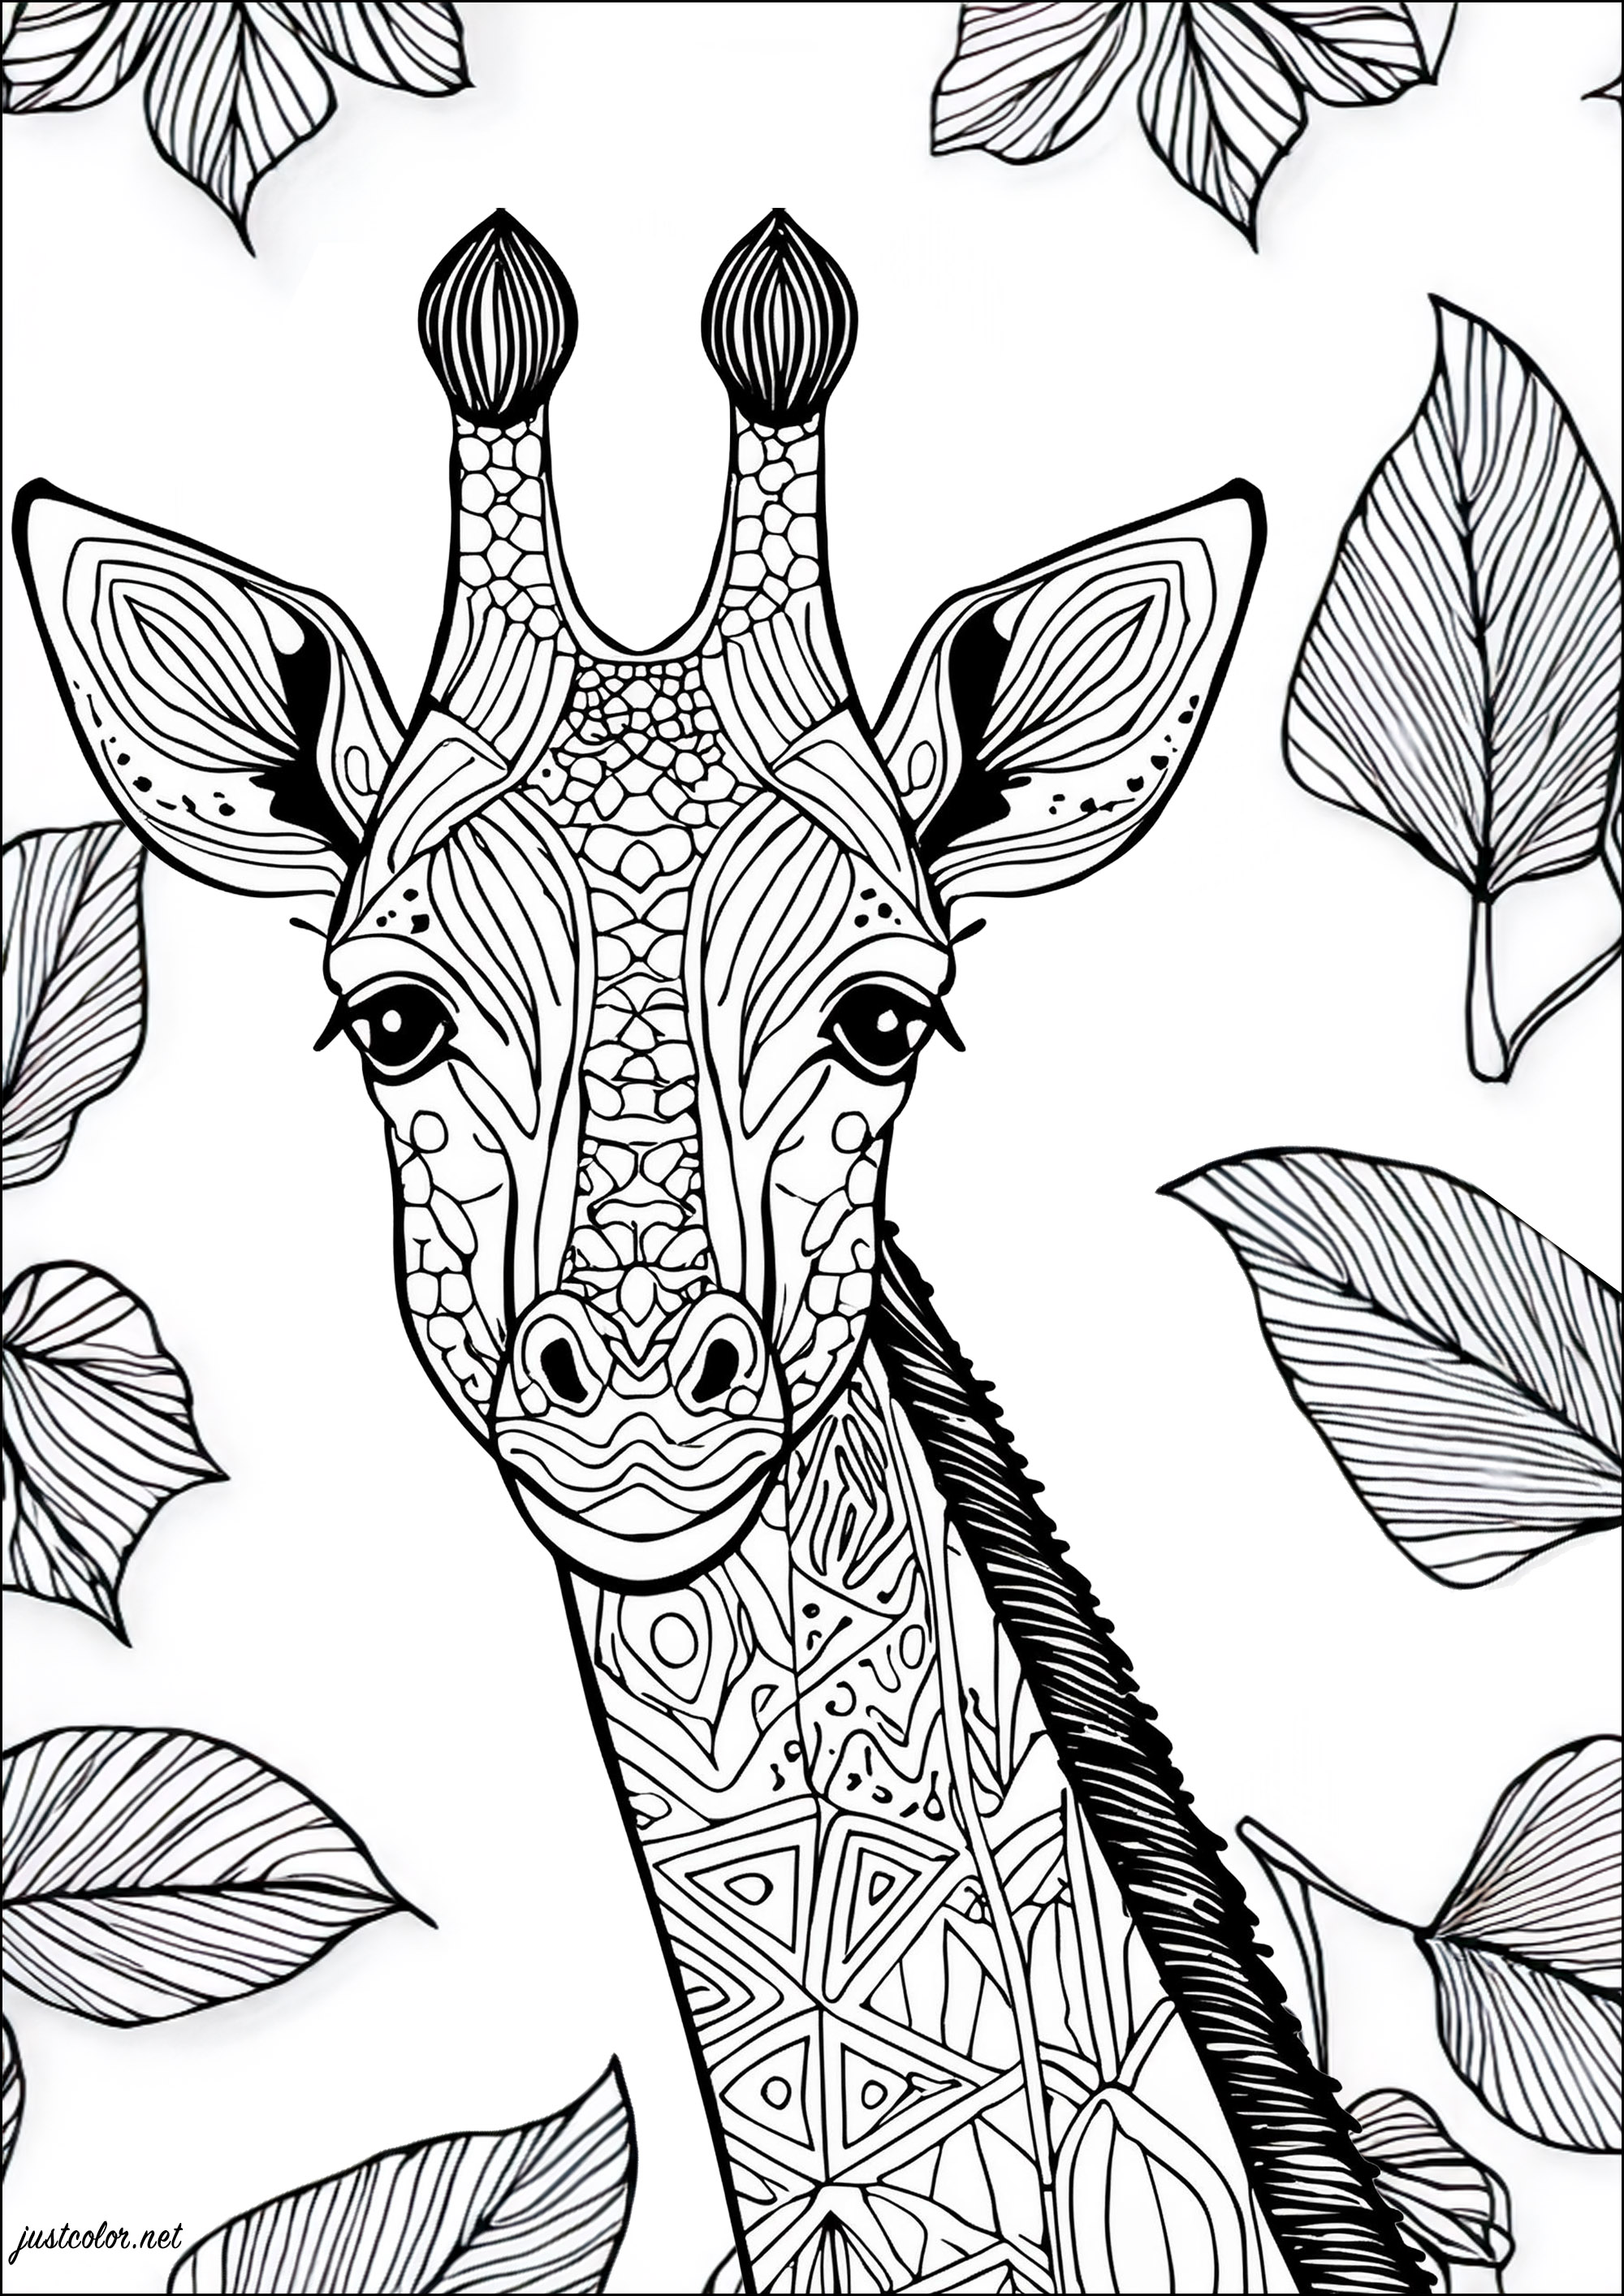 Belle Girafe avec fond composé de feuilles. Jolis motifs à colorier dans la girafe, et feuilles aux nervures assez serrées